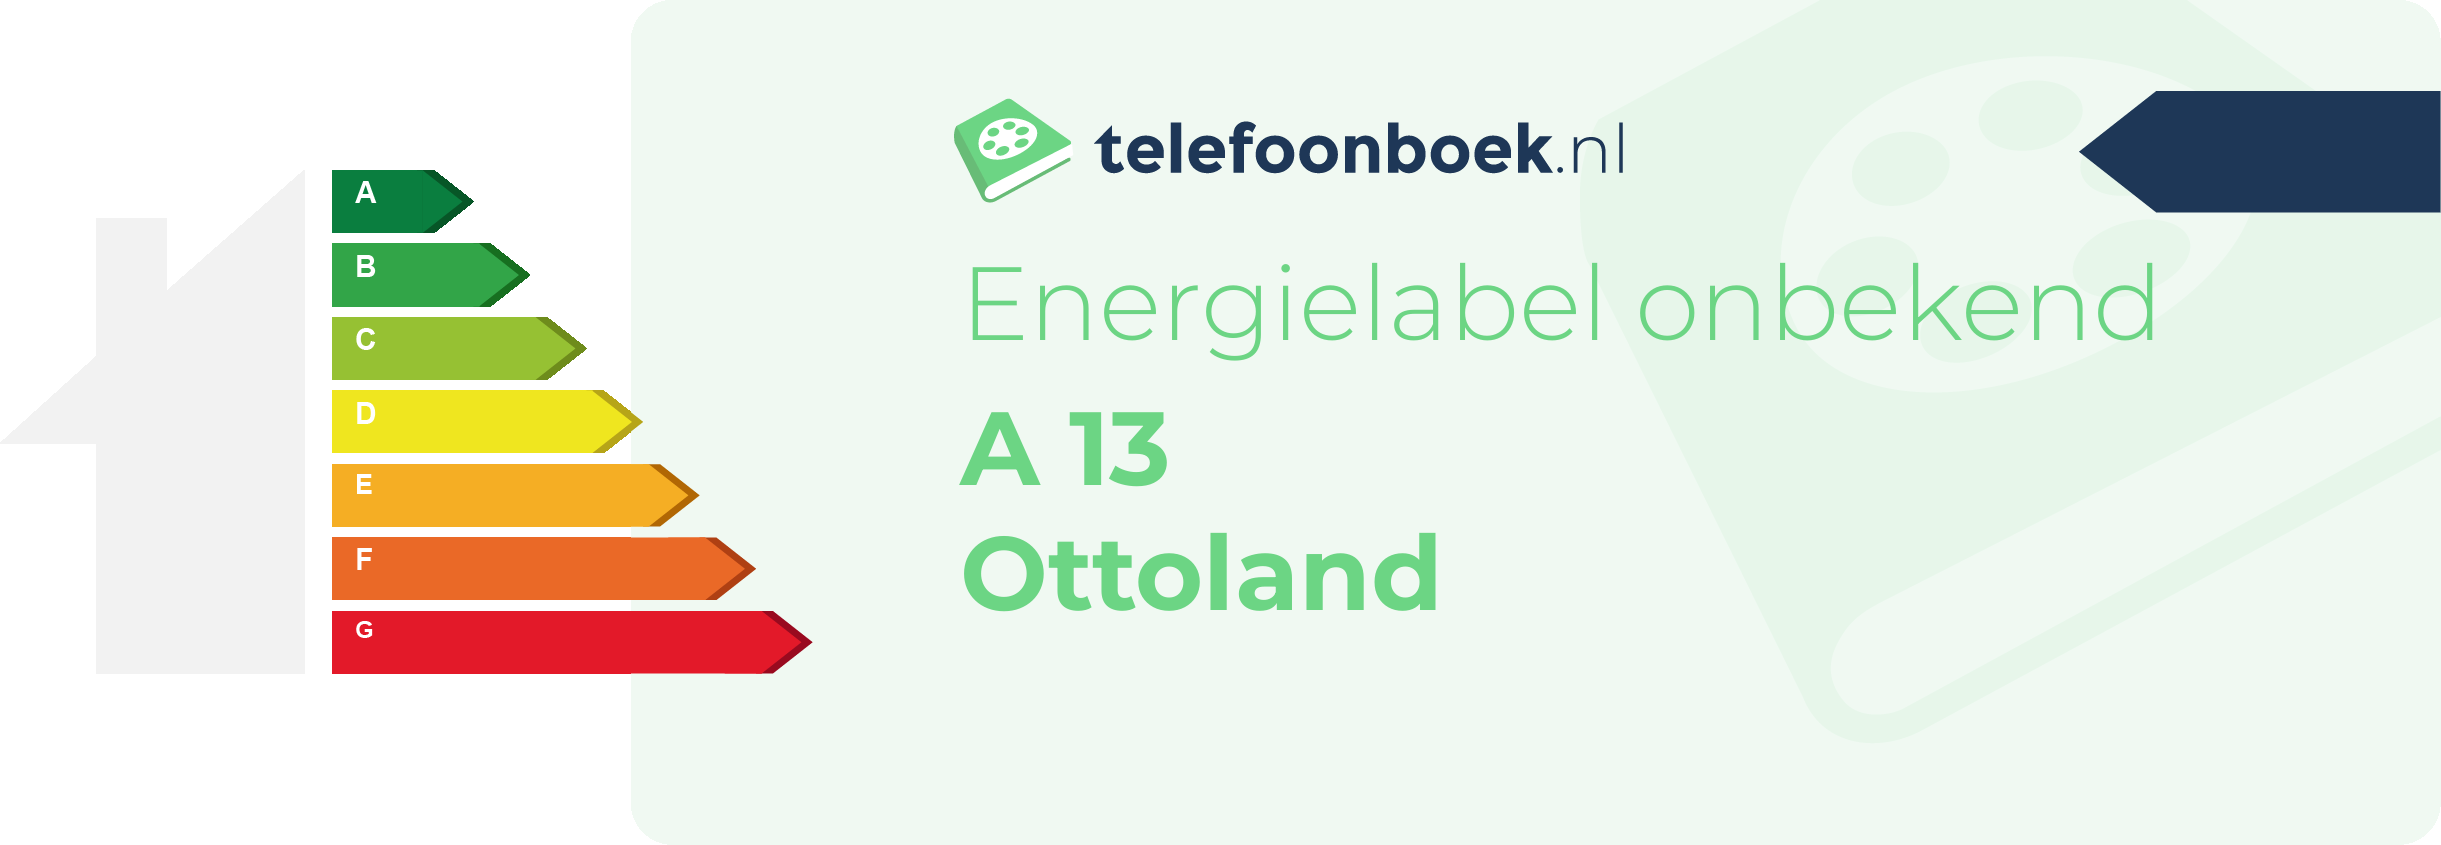 Energielabel A 13 Ottoland